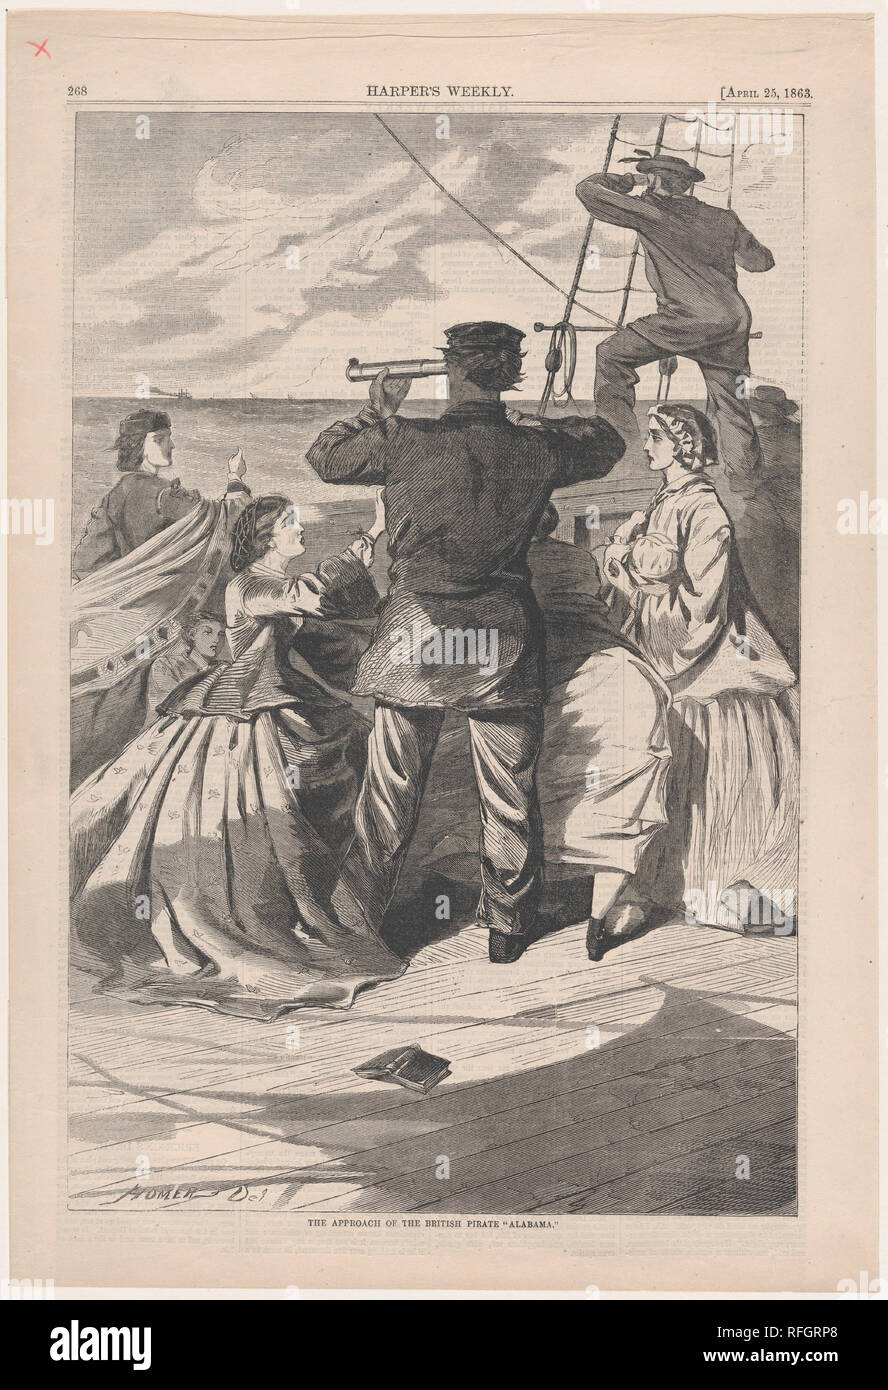 L'approccio del pirata britannico "Alabama" (Harper's Weekly, Vol. VII). Artista: Winslow Homer (American, Boston, Massachusetts 1836-1910 Prouts collo, Maine). Dimensioni: immagine: 13 3/4 x 9 1/8 in. (34,9 x 23,2 cm) foglio: 16 x 10 7/8 in. (40,6 x 27,7 cm). Editore: Harper's settimanale (American, 1857-1916). Data: 25 aprile 1863. Museo: Metropolitan Museum of Art di New York, Stati Uniti d'America. Foto Stock